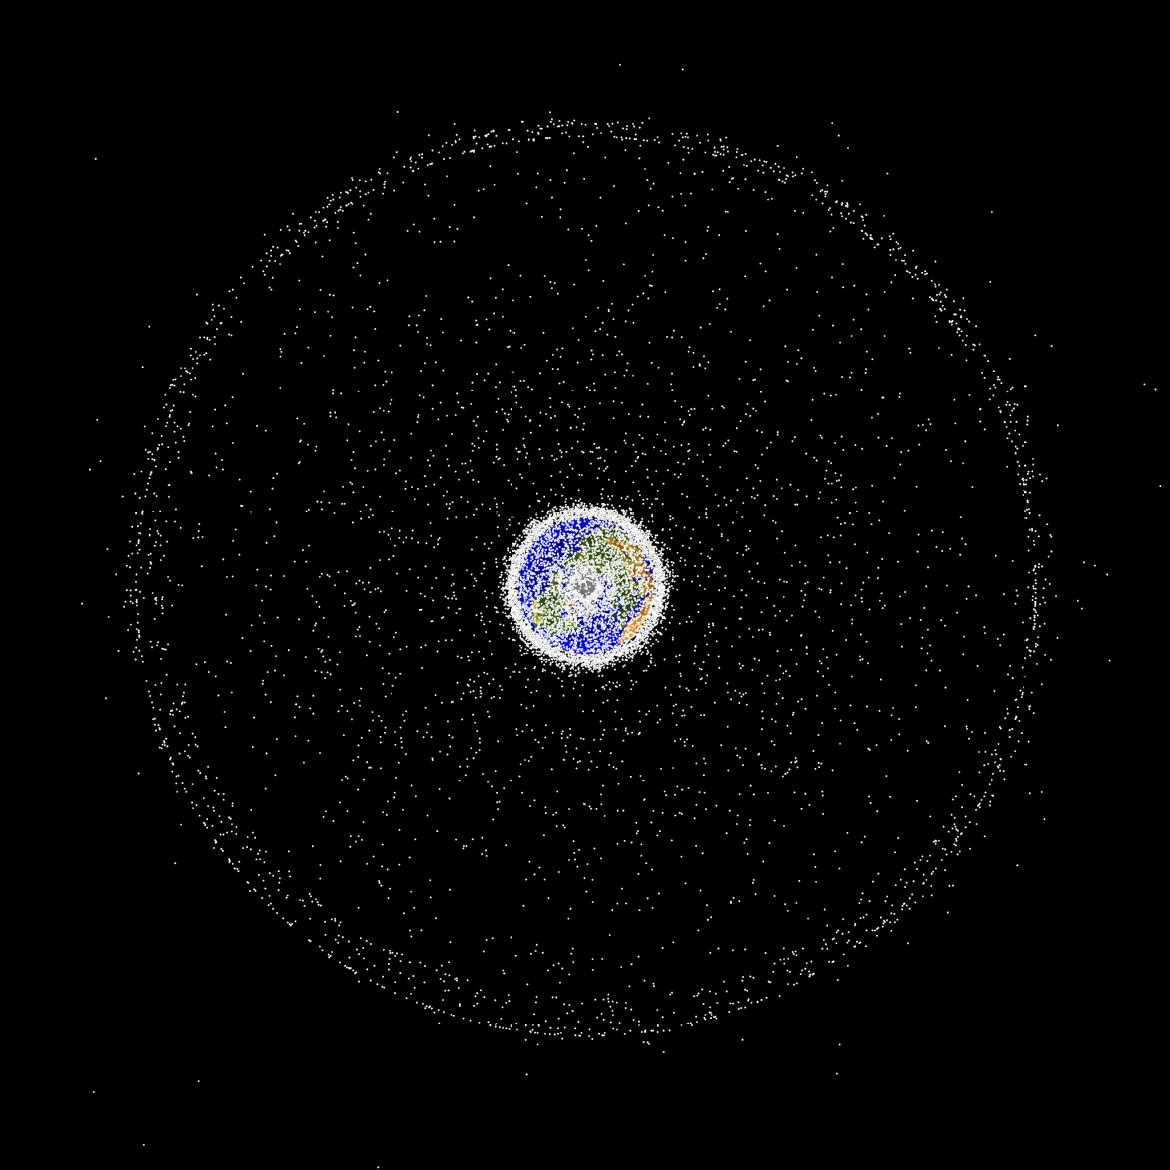 Orbital debris field of the Earth